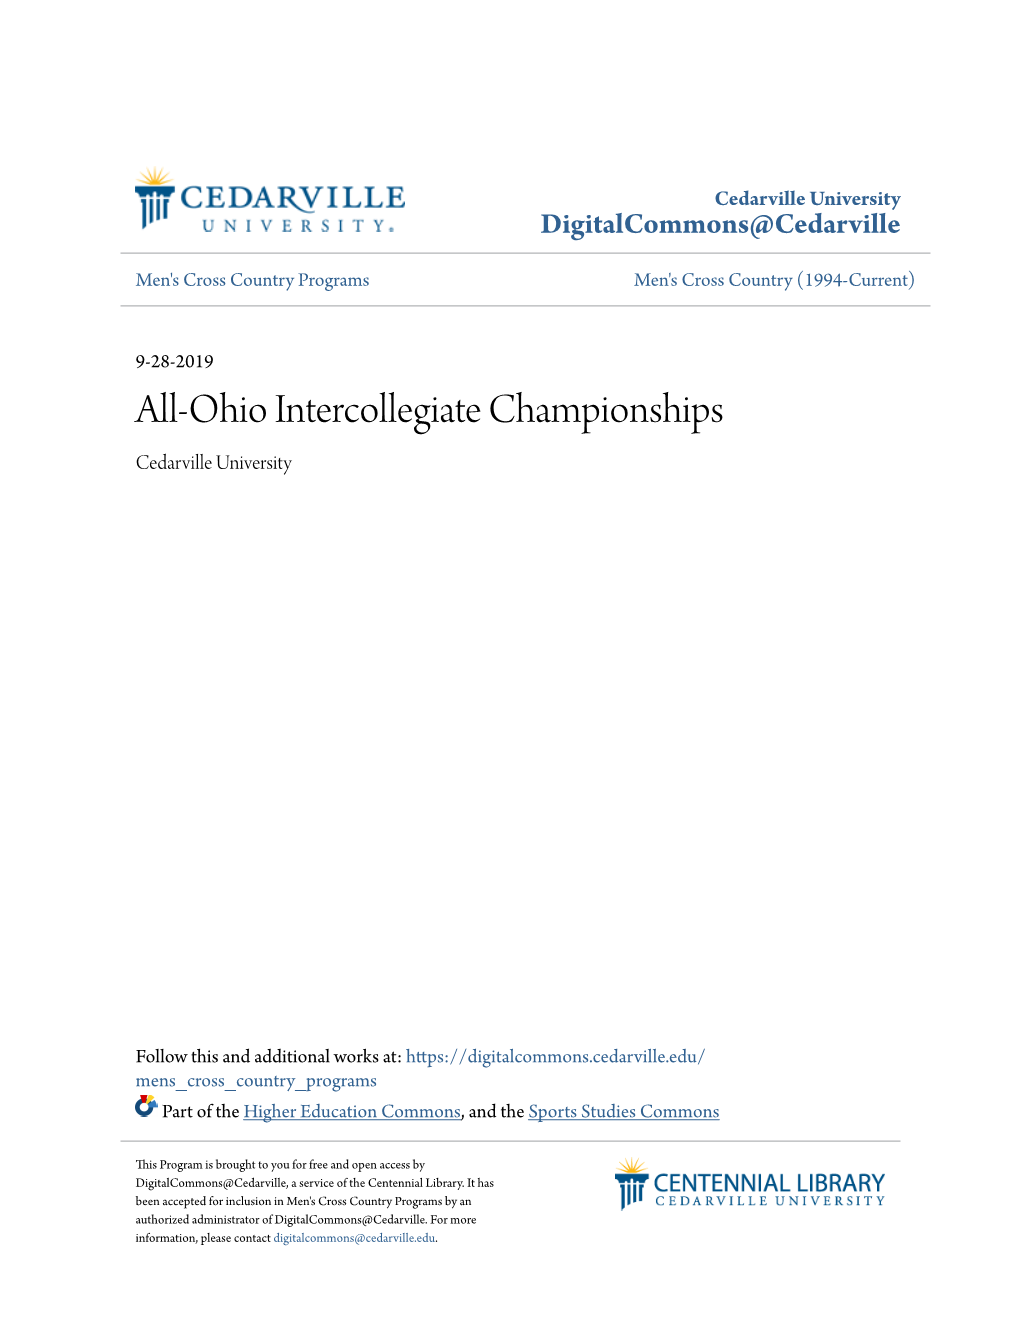 All-Ohio Intercollegiate Championships Cedarville University